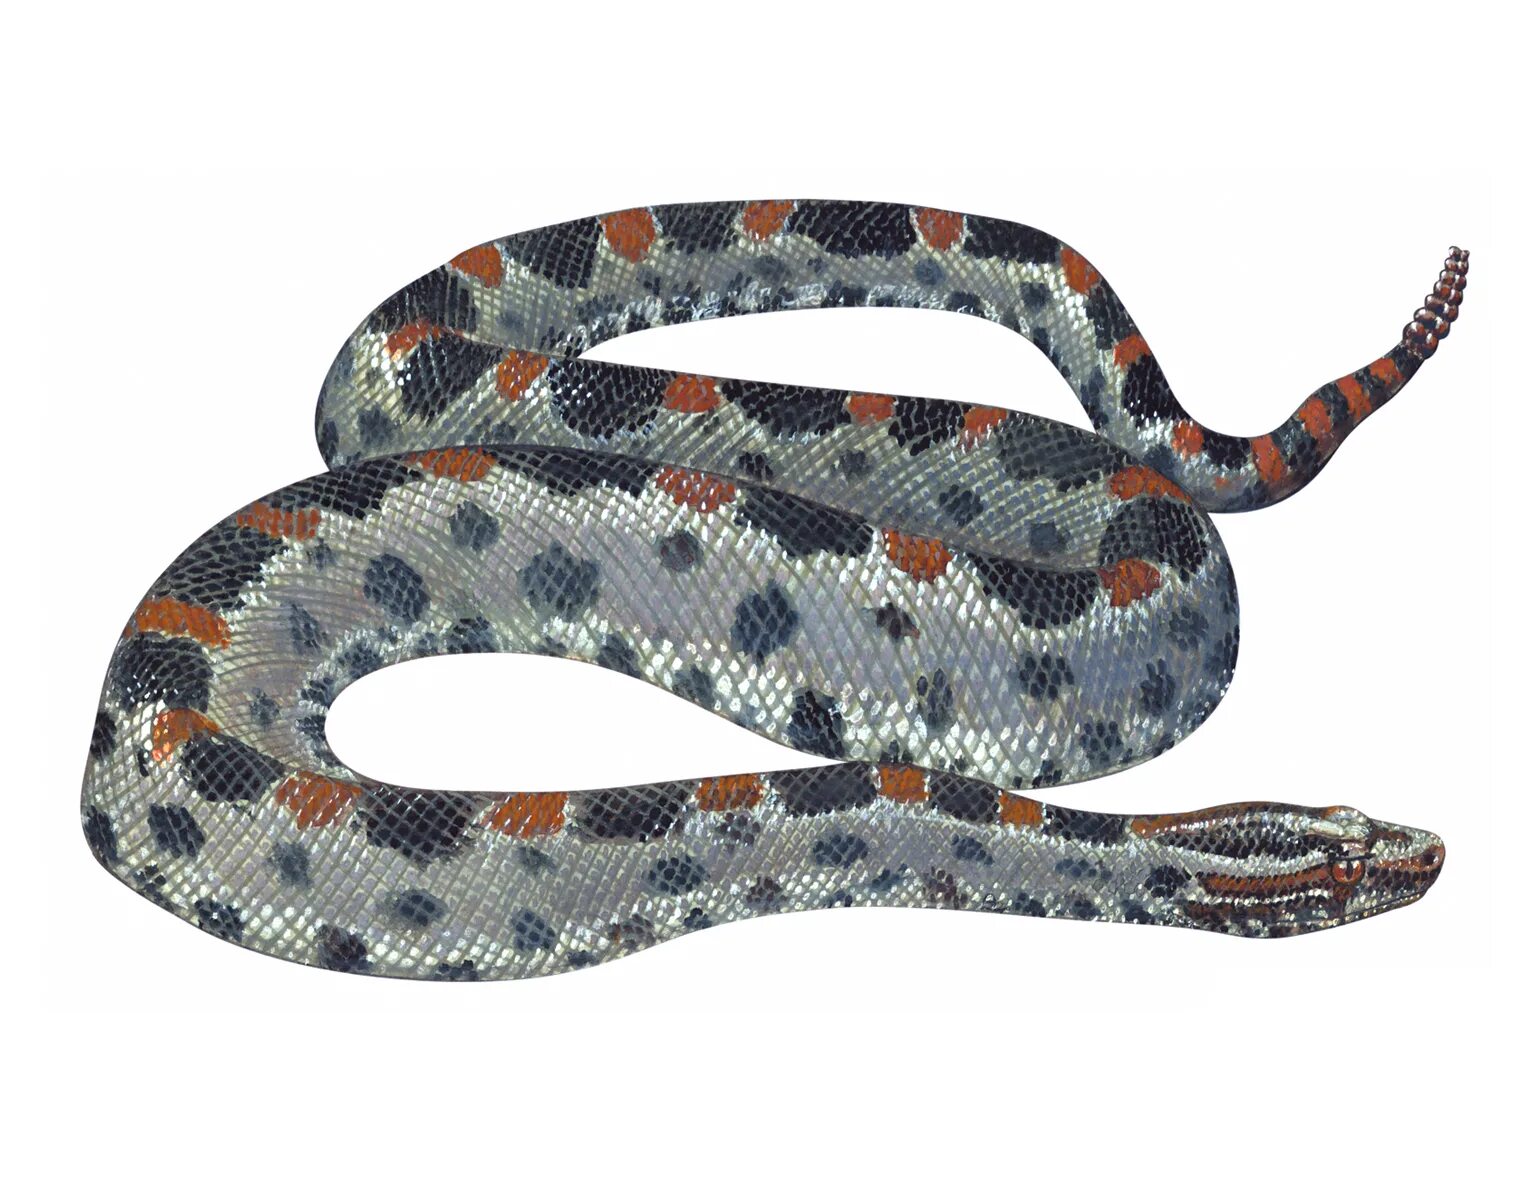 Pygmy Rattlesnake. Мини сумки бочка рептилия или змея. Слух змеи